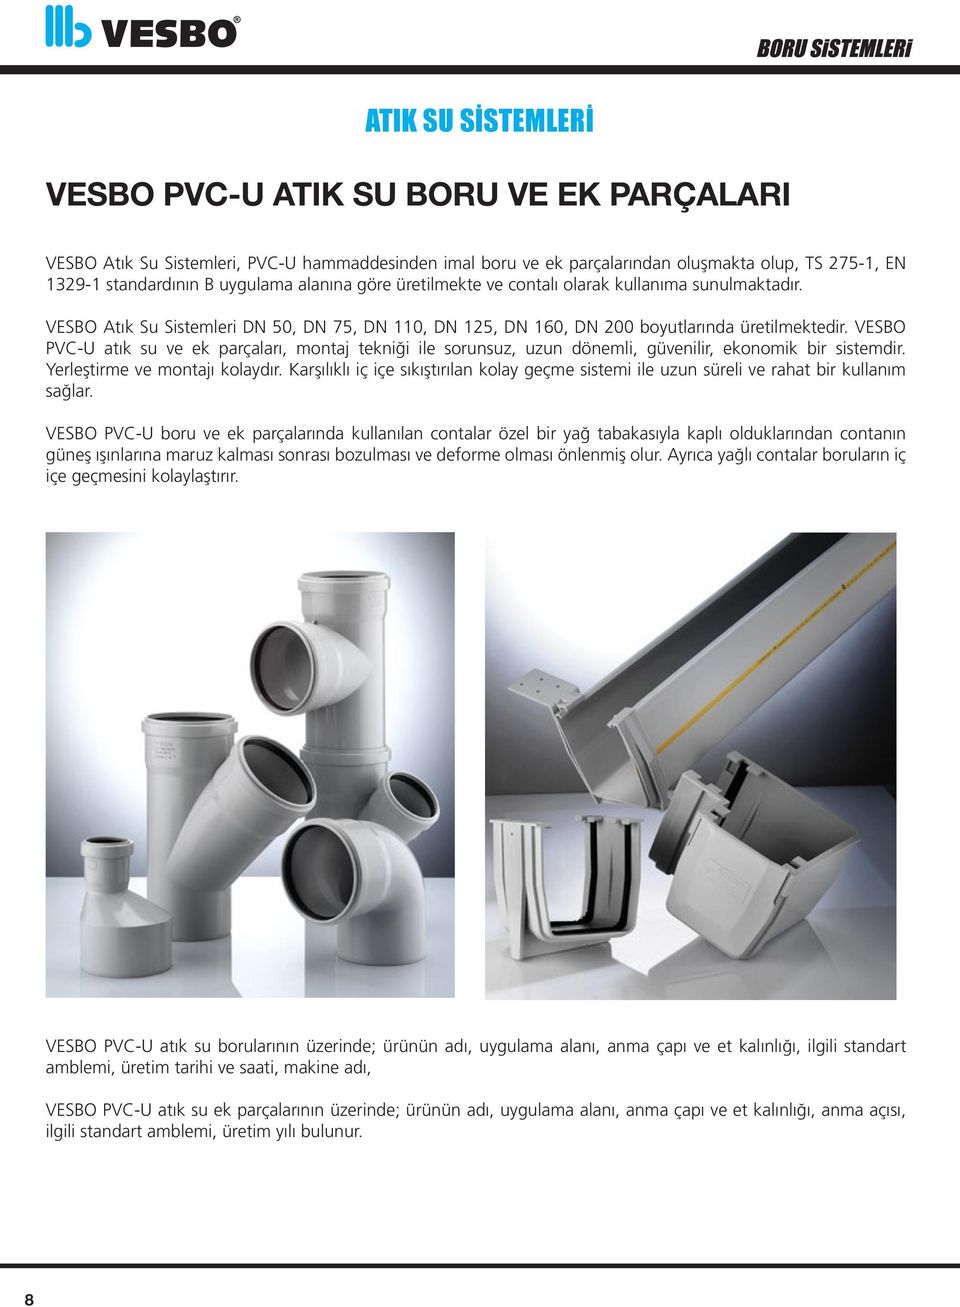 VESBO PVC-U atık su ve ek parçaları, montaj tekniği ile sorunsuz, uzun dönemli, güvenilir, ekonomik bir sistemdir. Yerleştirme ve montajı kolaydır.